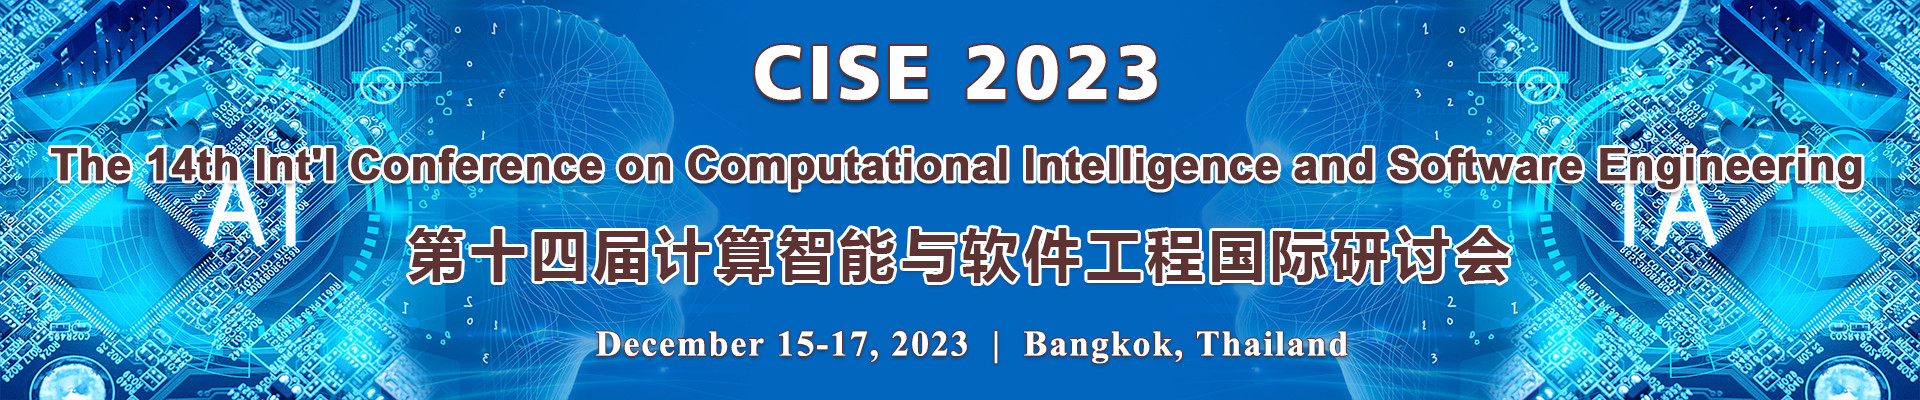 第十四届计算智能与软件工程国际研讨会(CISE 2023)